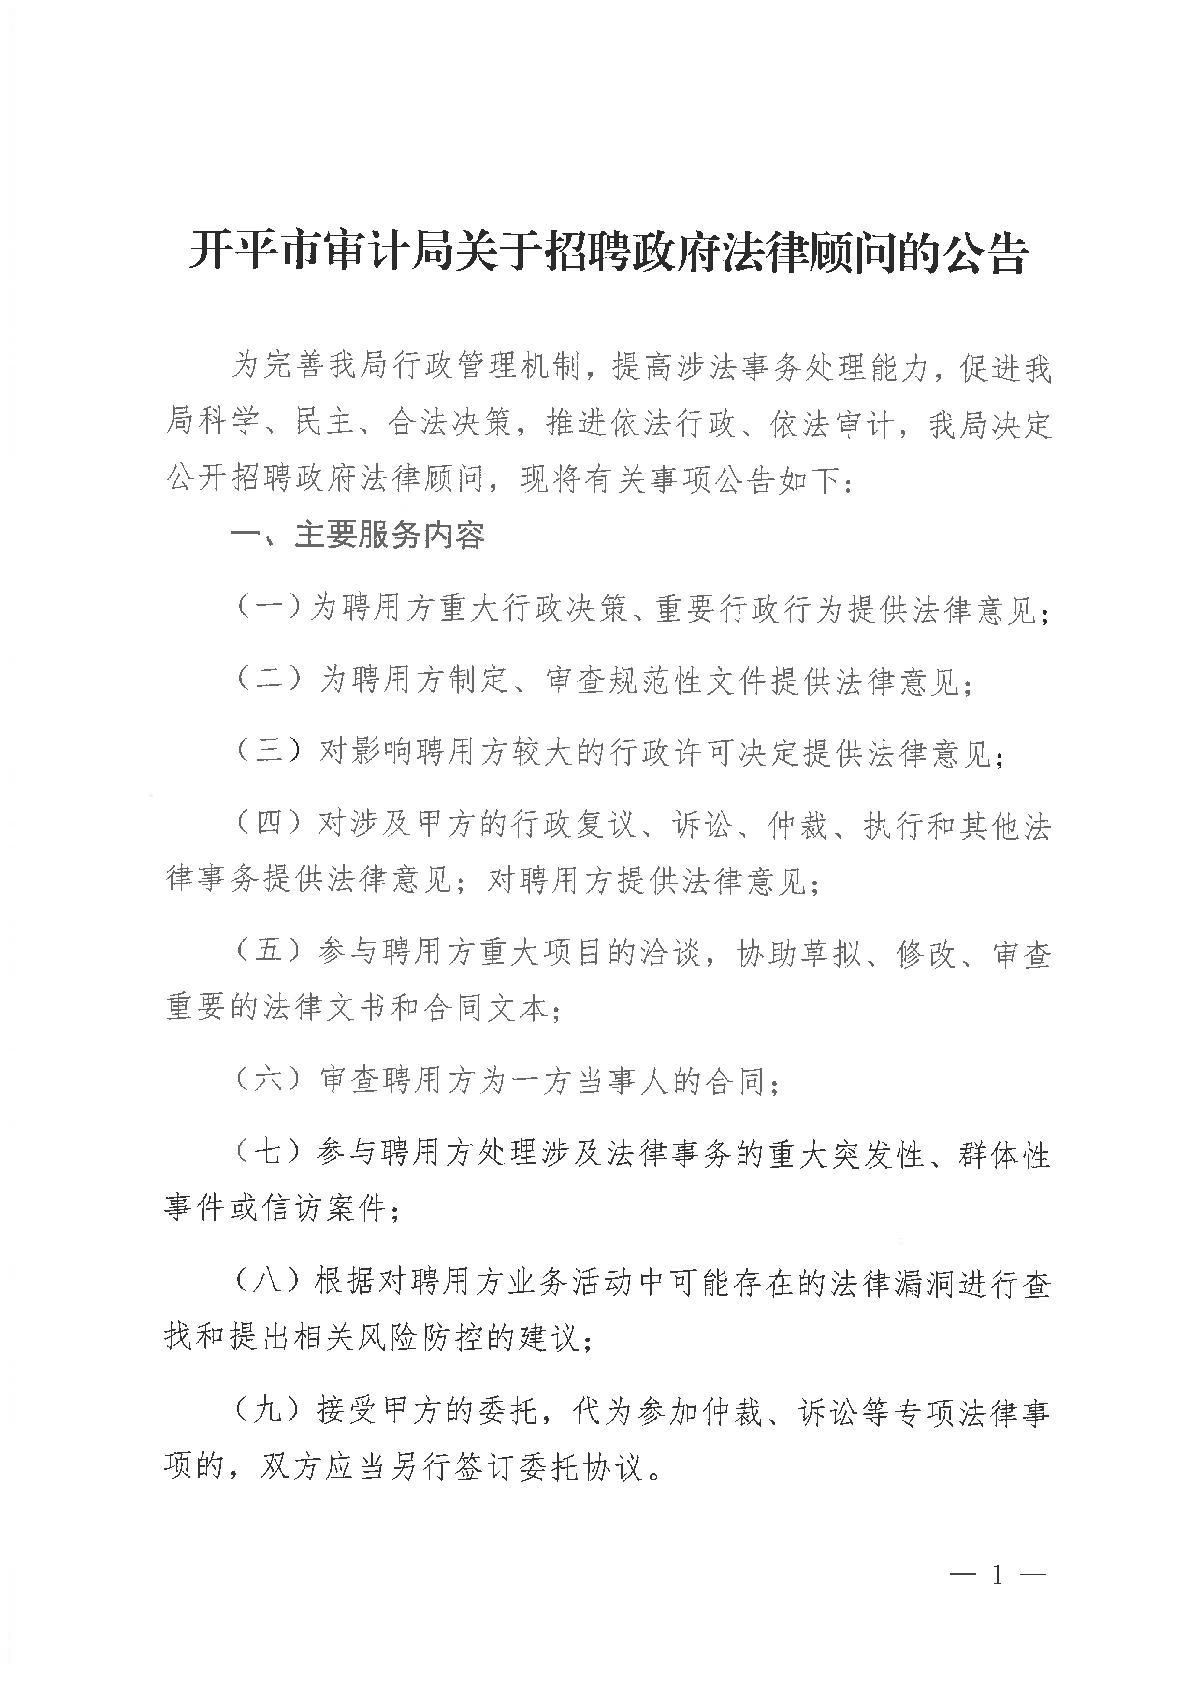 开平市审计局关于招聘政府法律顾问的公告_1.JPG